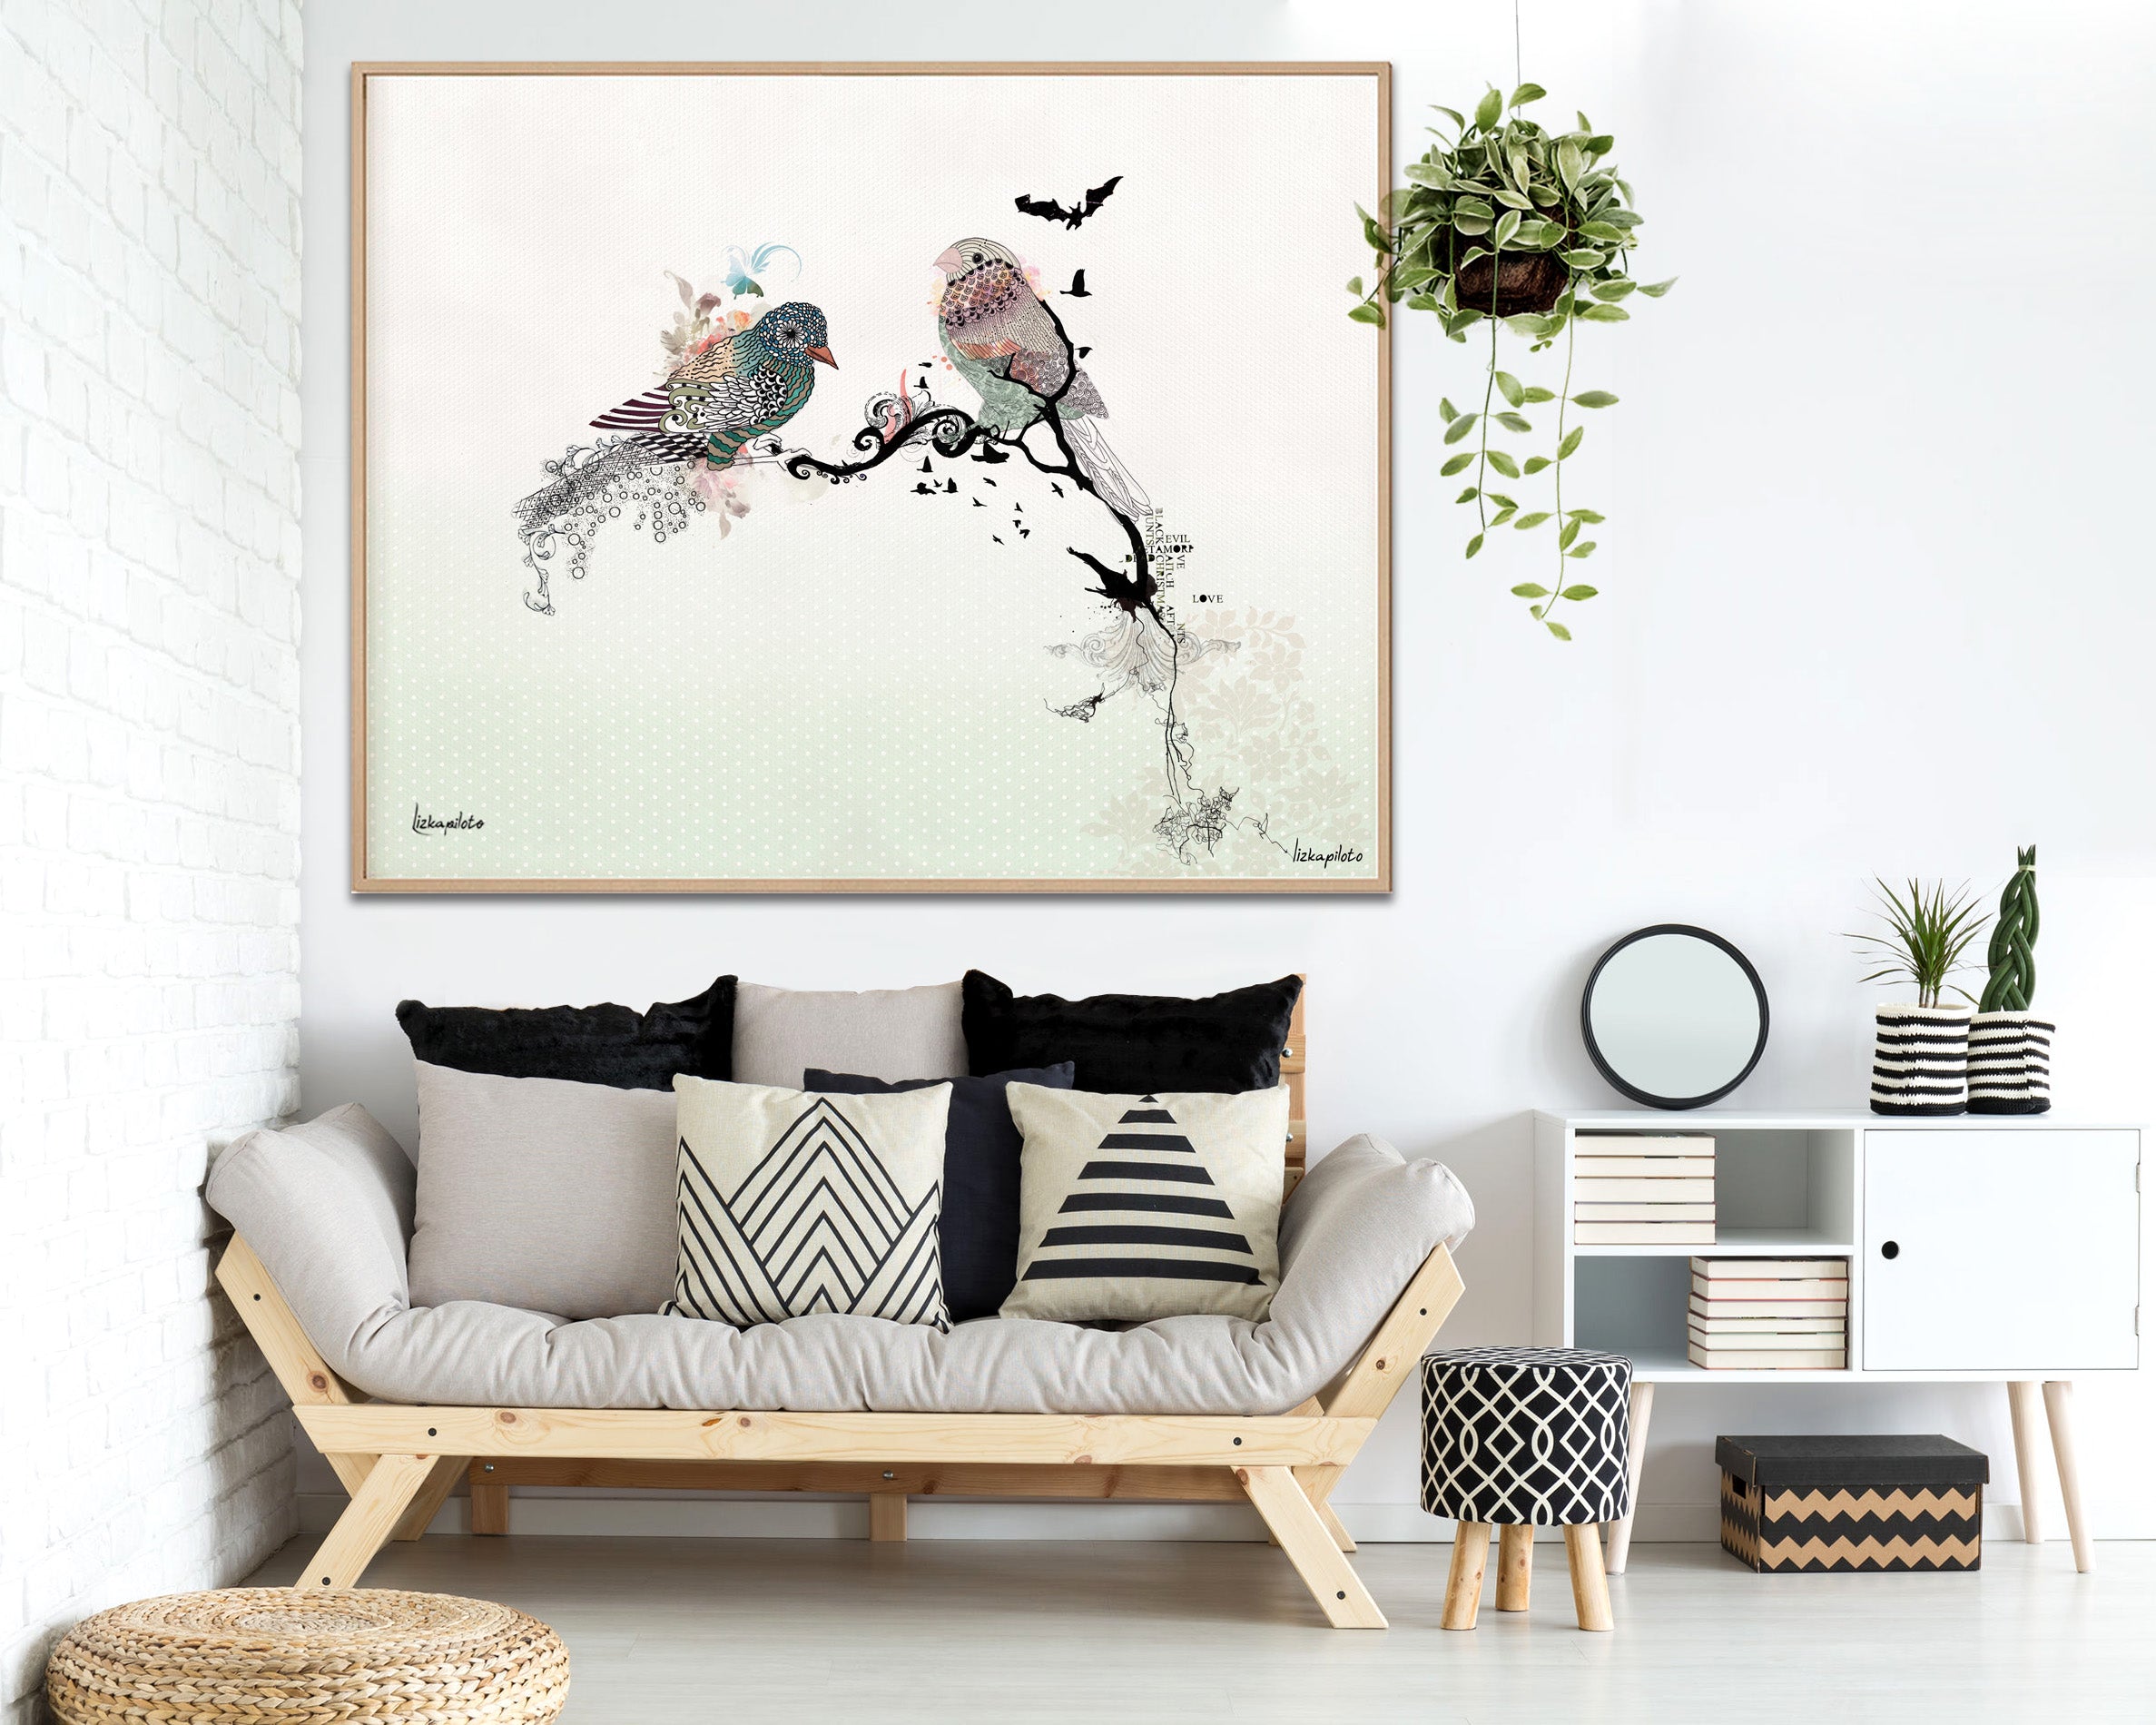 love bird art, hanged above modern sofa with pillows